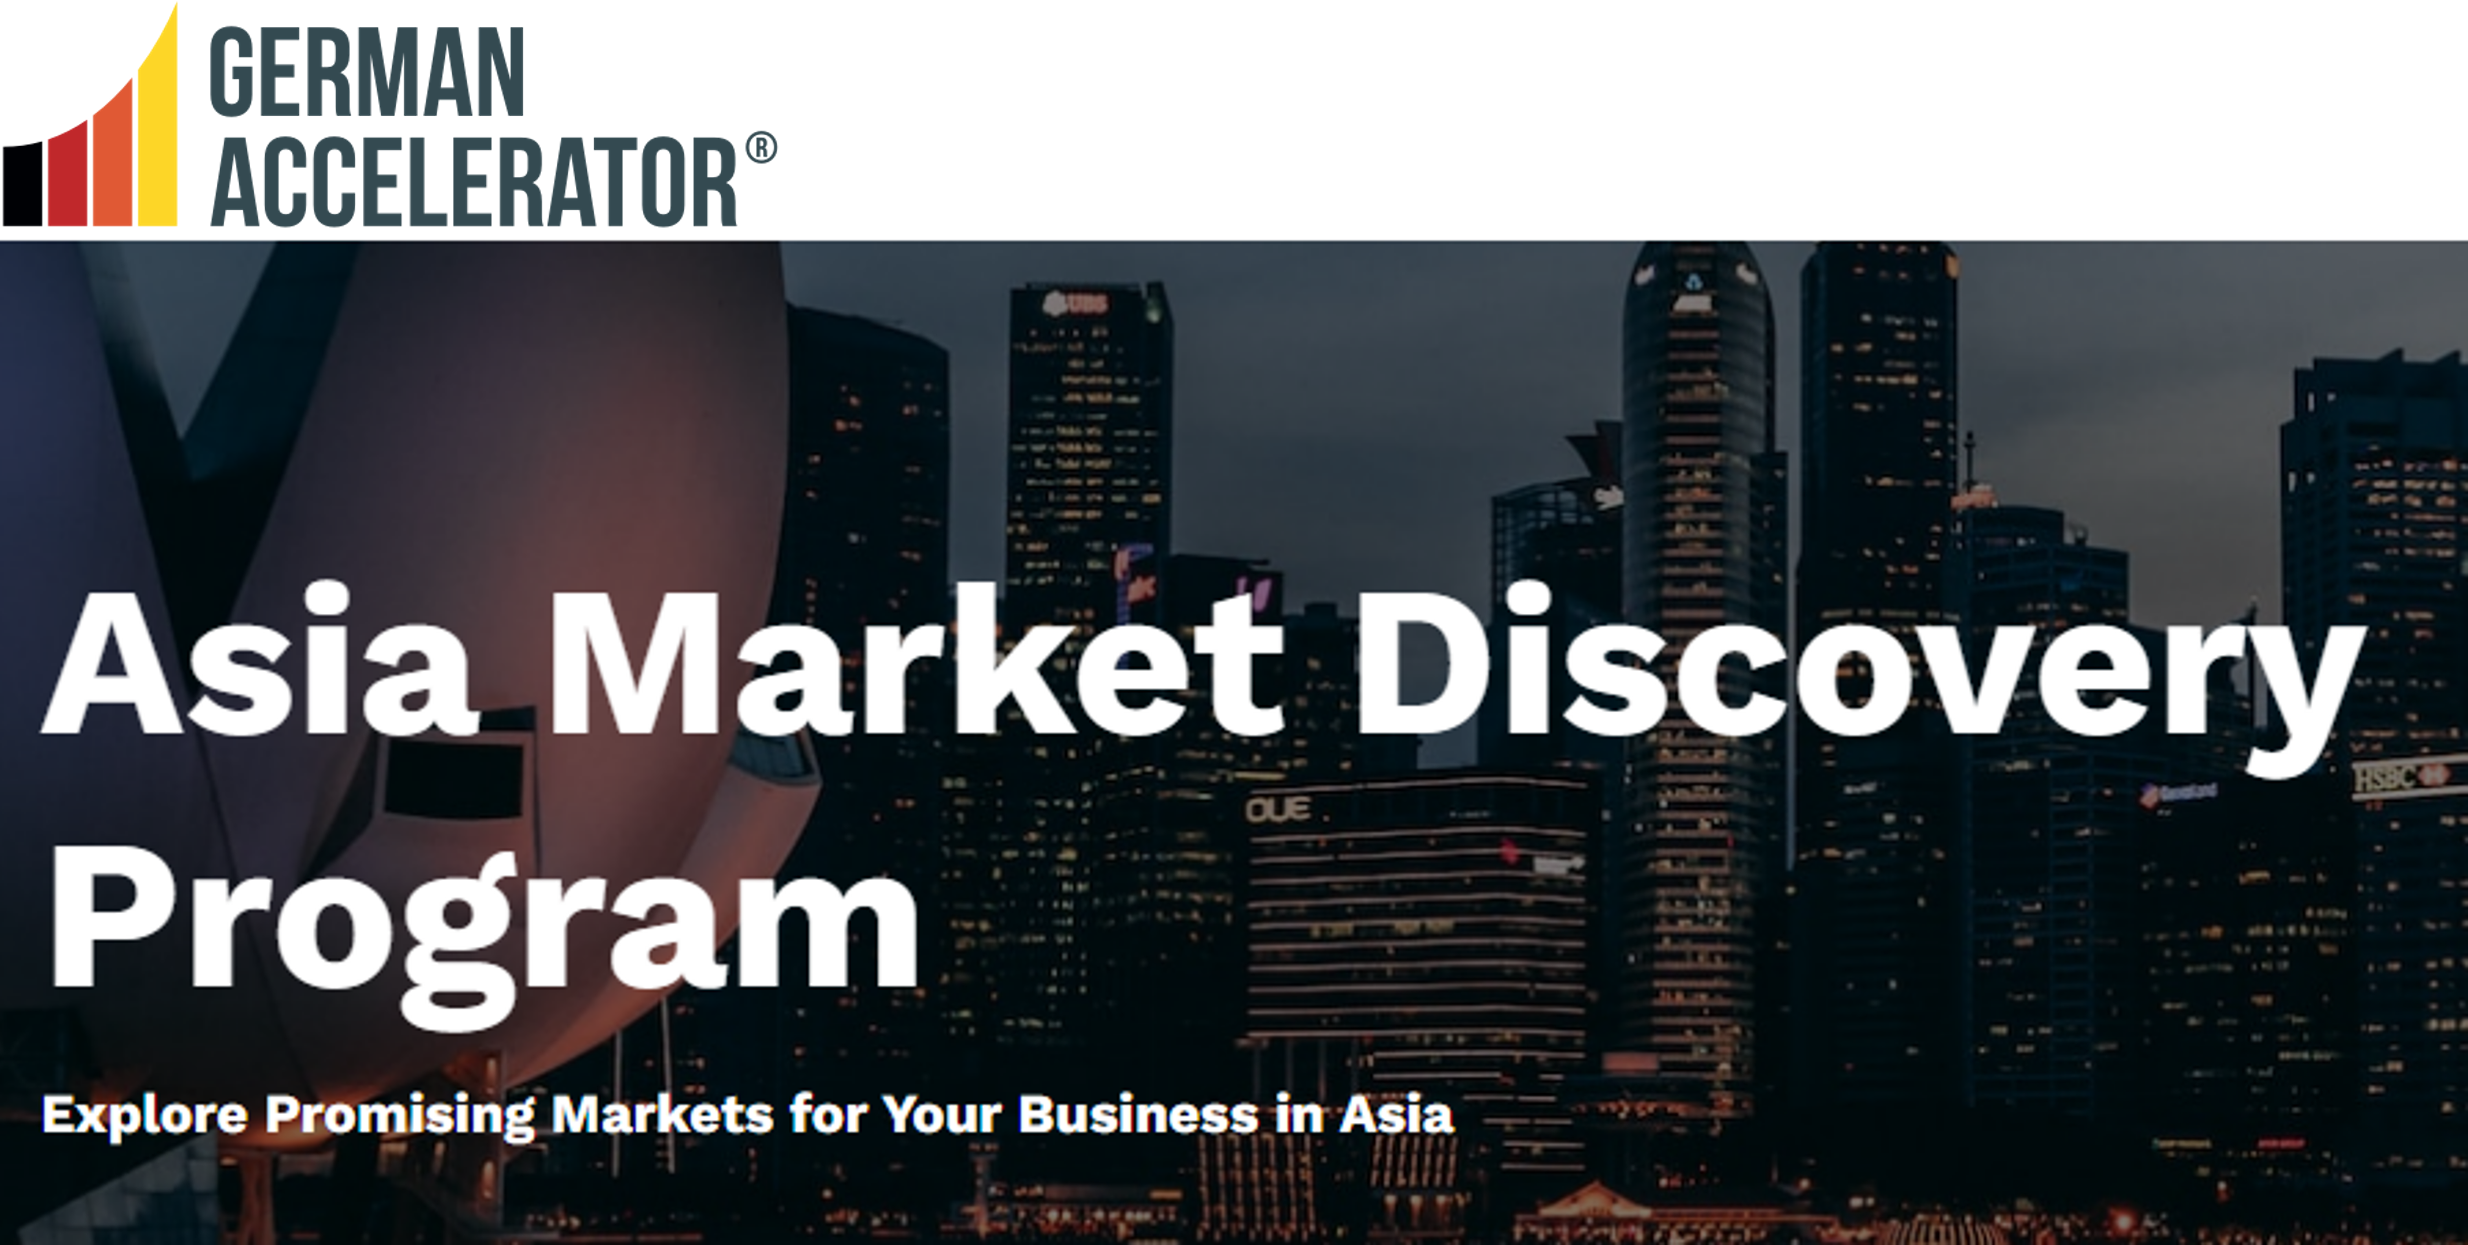 LIVID sichert sich Platz in der Asian Market Discovery Class des “German Accelerator Program”